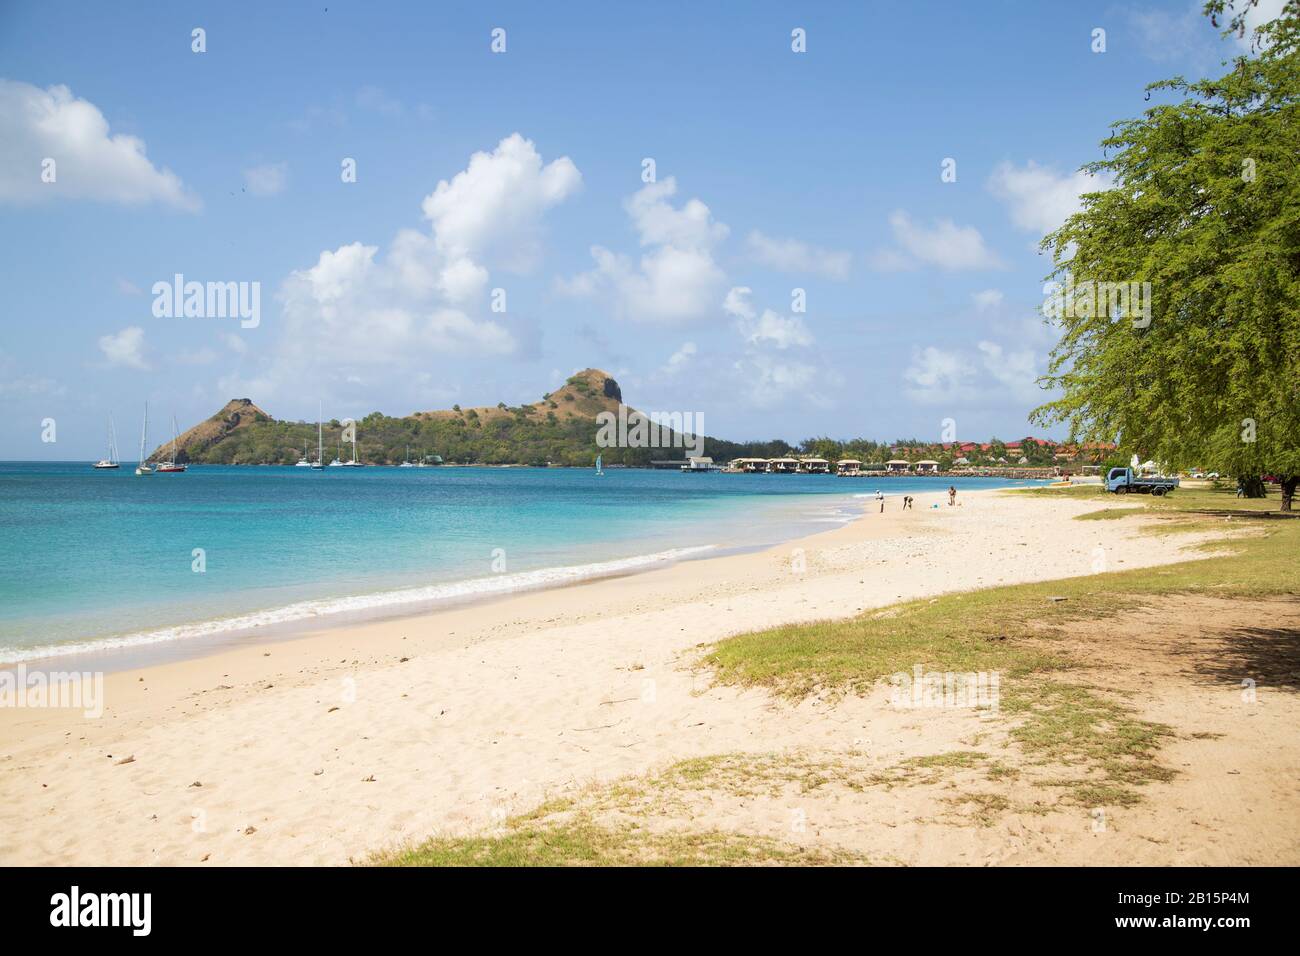 Weißer Sand, blaues Meer und Himmel, Menschen, Rasenfläche in Strandnähe, Hotel, grüne Gummibäume und Nationalmarke der Taubeninsel, berühmte Halbinsel in der Ferne Stockfoto